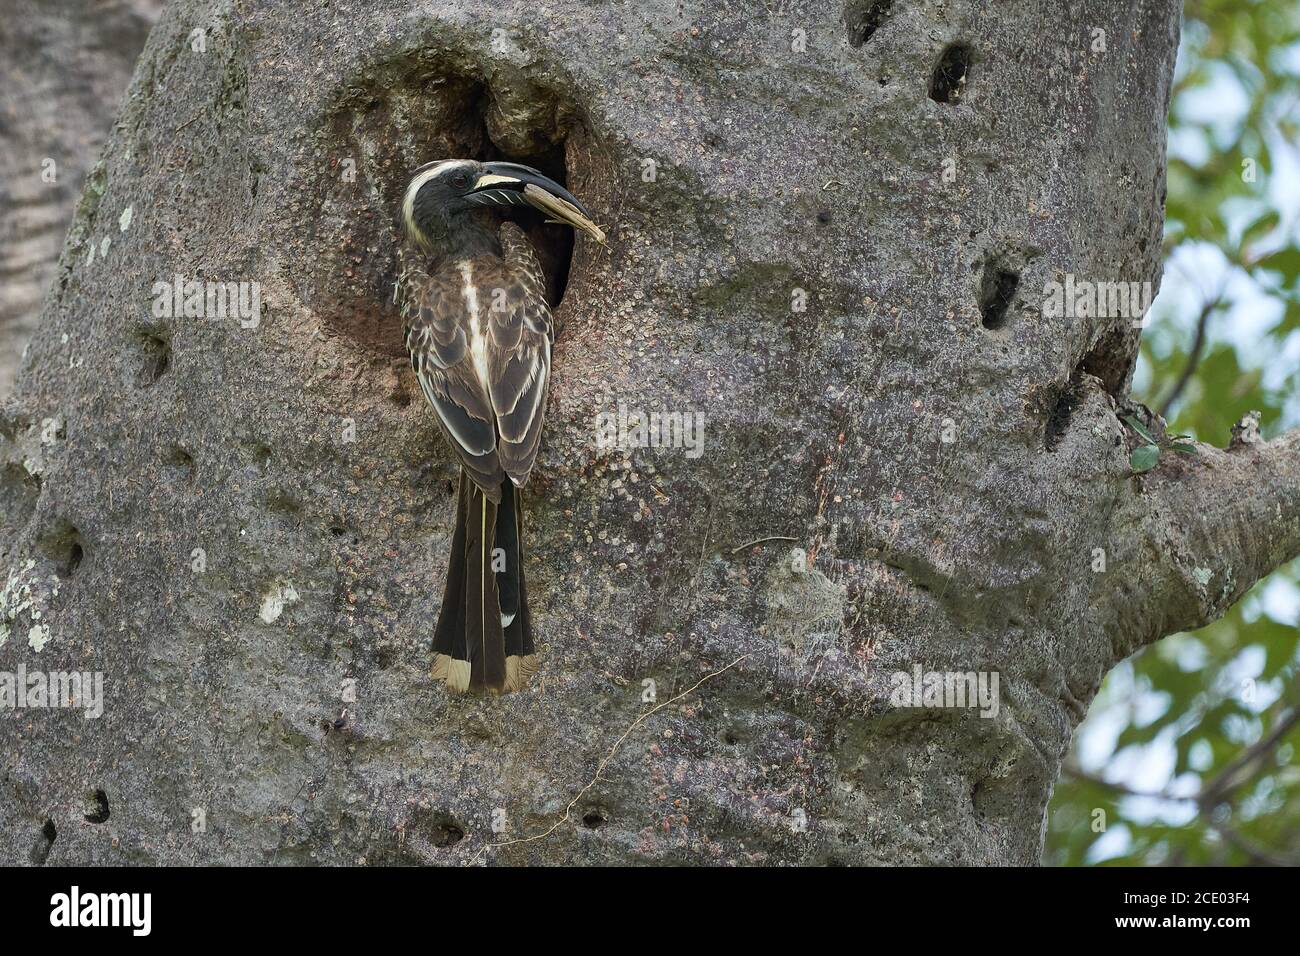 El pico de caballo gris africano Lophoceros nasutus tropical cerca de aves paseriformes encontradas en el Viejo Mundo. África. Retrato con insecto de comida Foto de stock